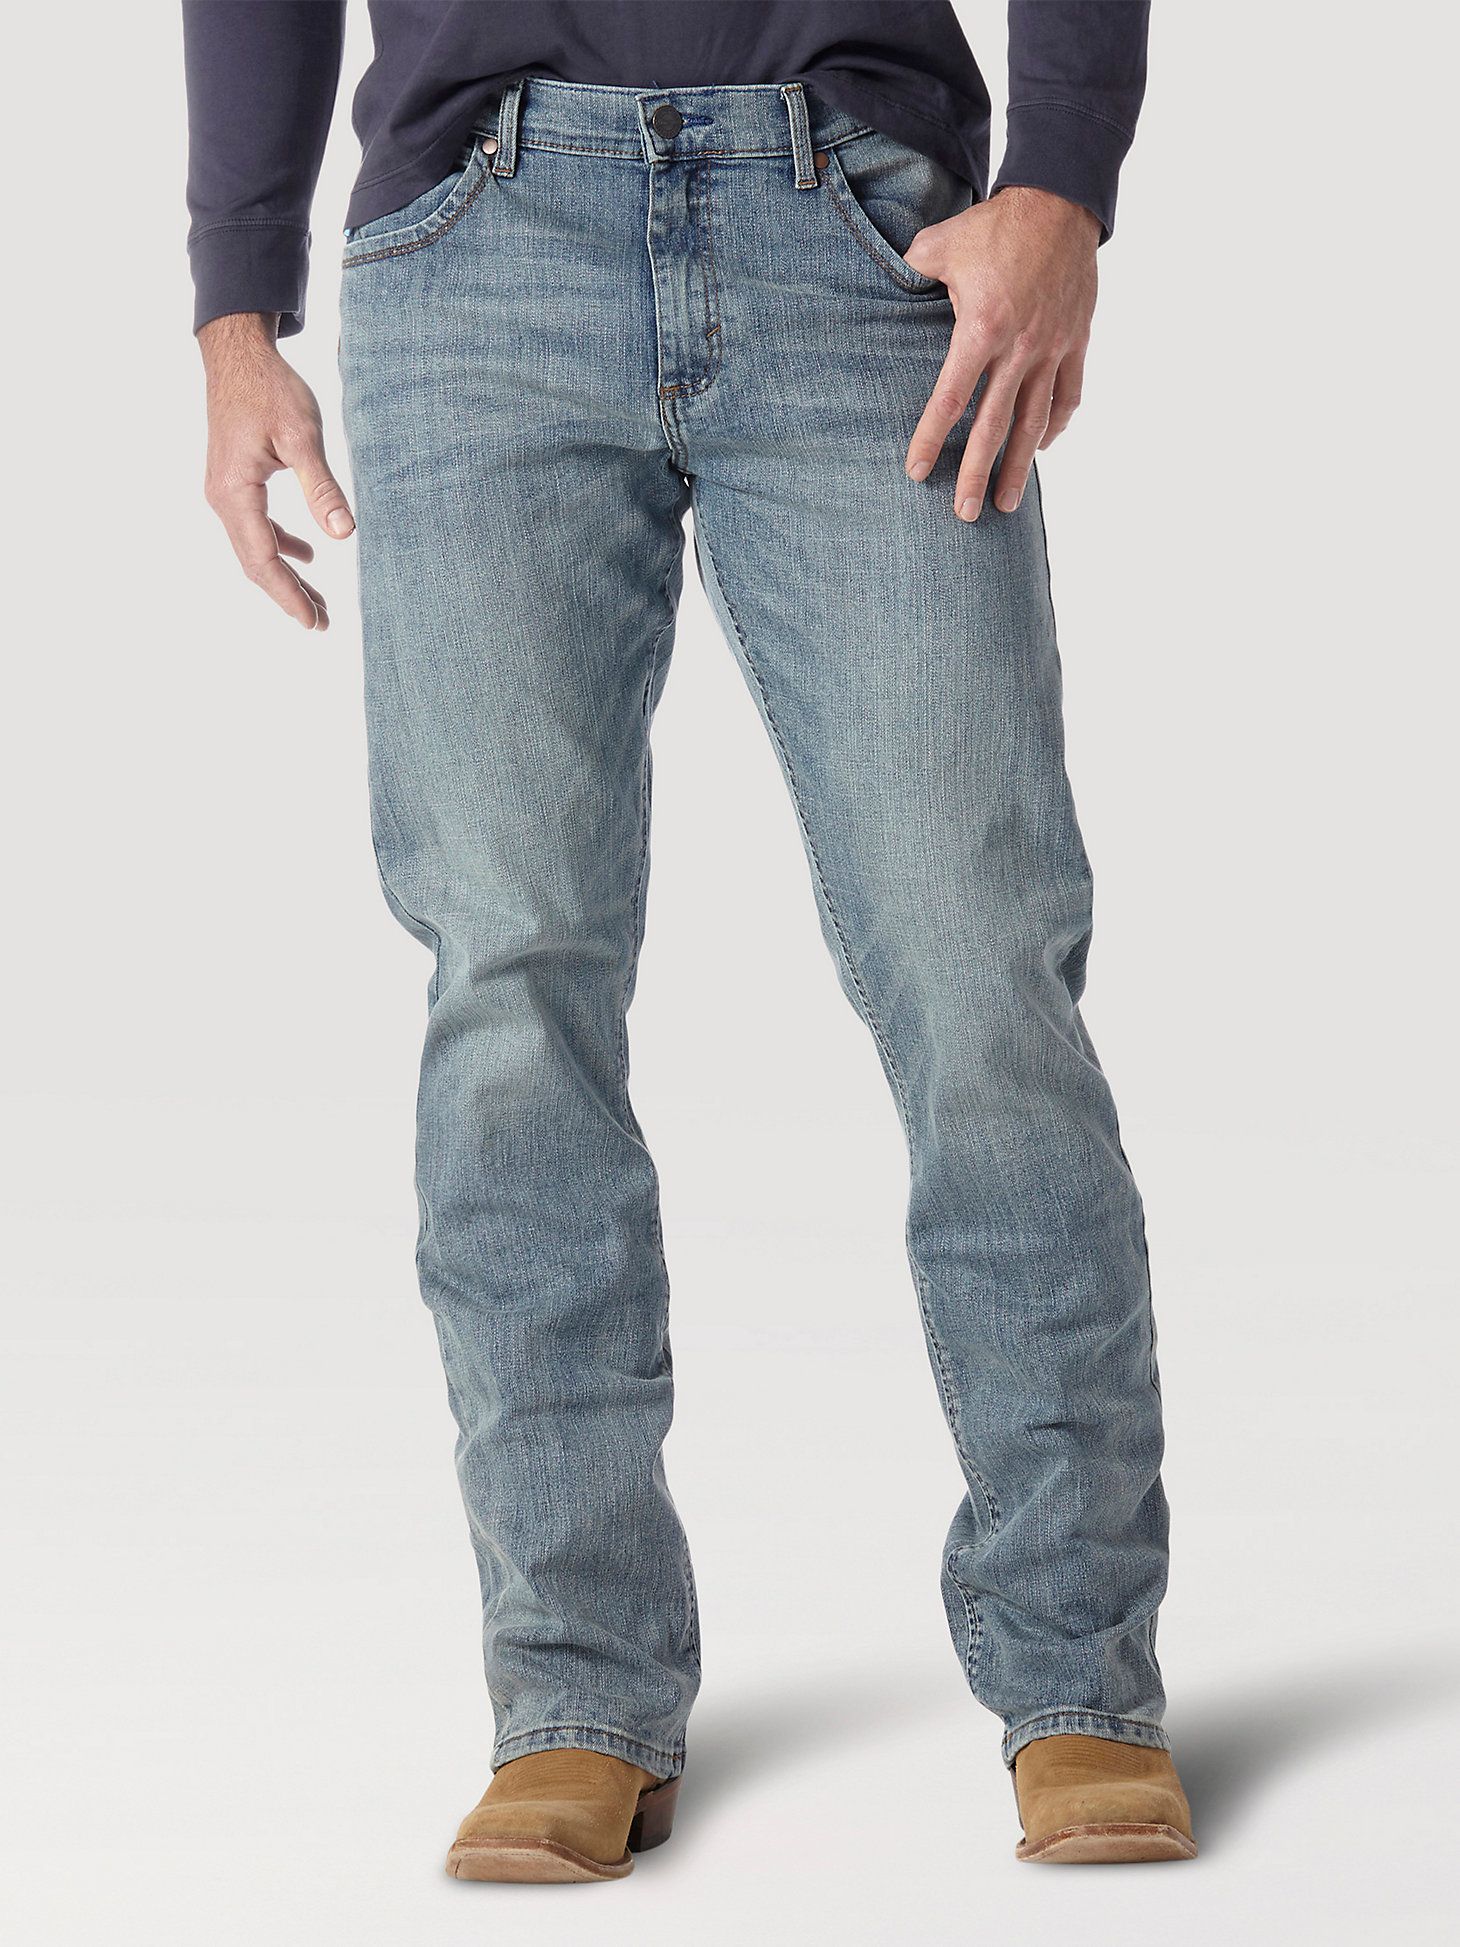 Men's Wrangler Retro® Slim Fit Bootcut Jean in BR Wash | Wrangler